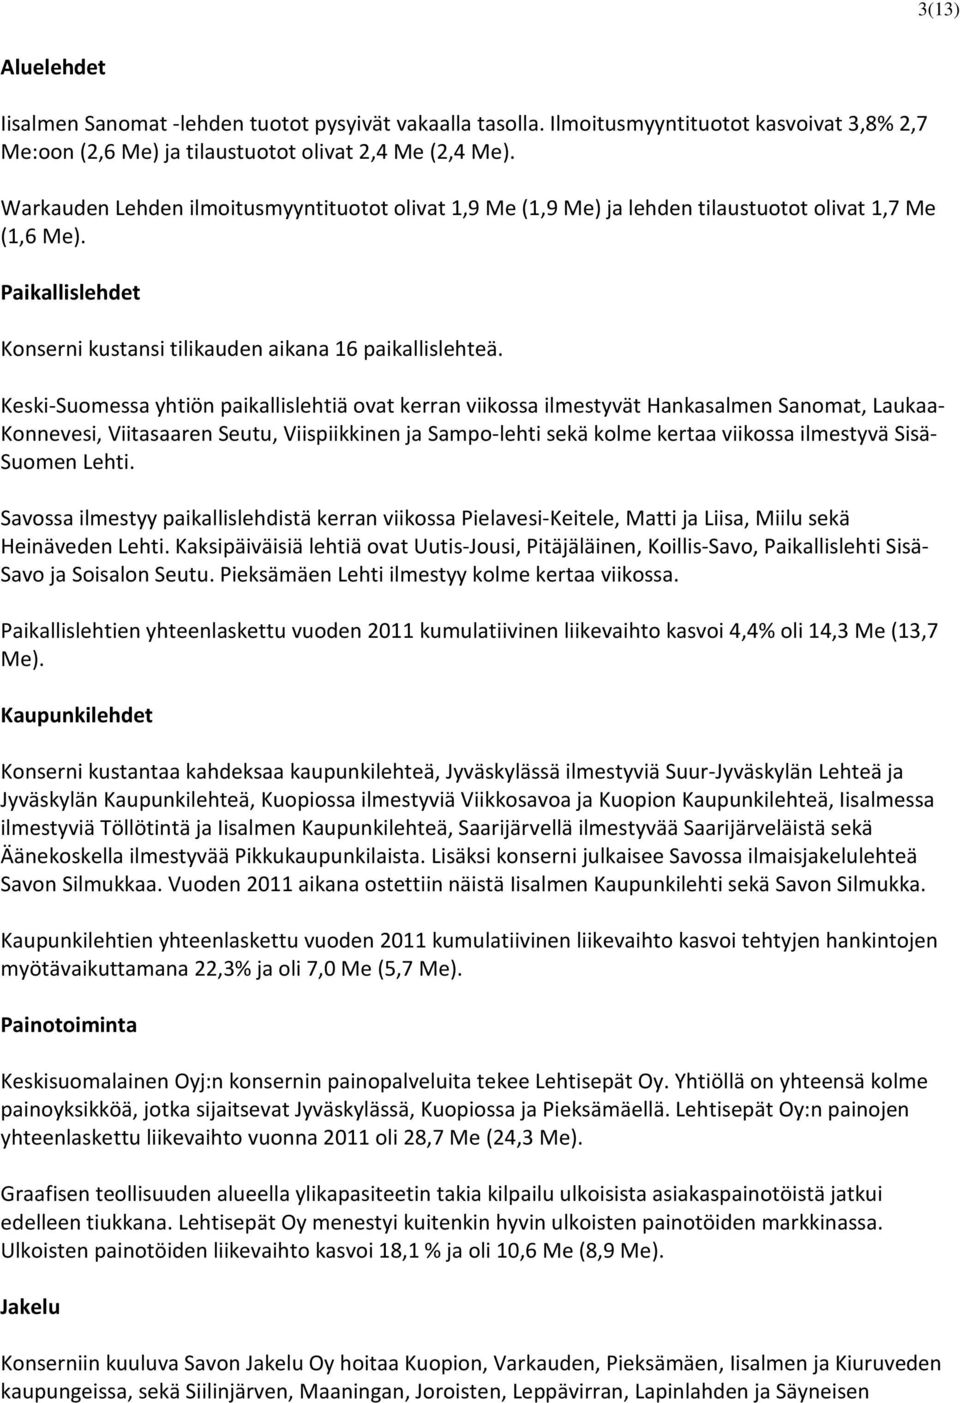 Keski-Suomessa yhtiön paikallislehtiä ovat kerran viikossa ilmestyvät Hankasalmen Sanomat, Laukaa- Konnevesi, Viitasaaren Seutu, Viispiikkinen ja Sampo-lehti sekä kolme kertaa viikossa ilmestyvä